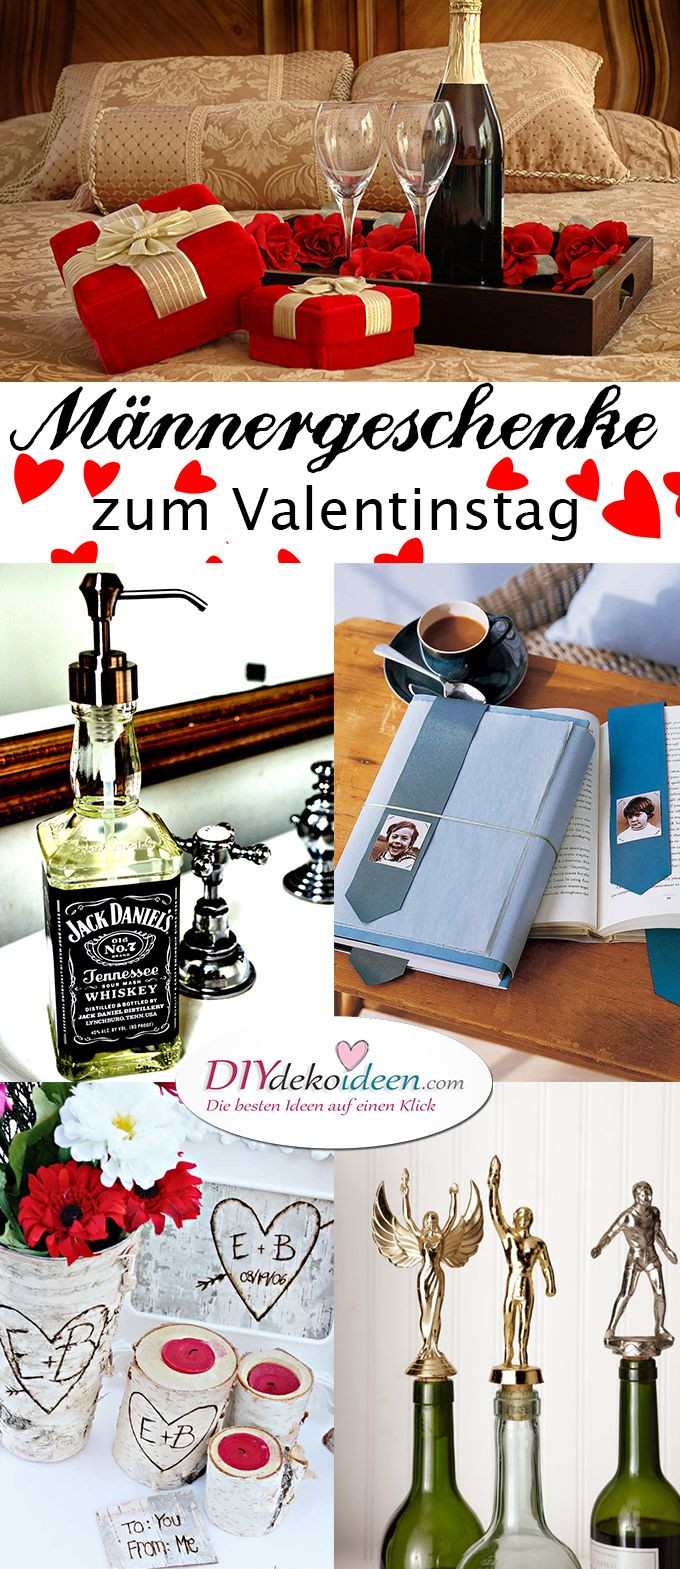 Geschenk Für Freund Diy
 Männergeschenke zum Valentinstag DIY Bastelideen